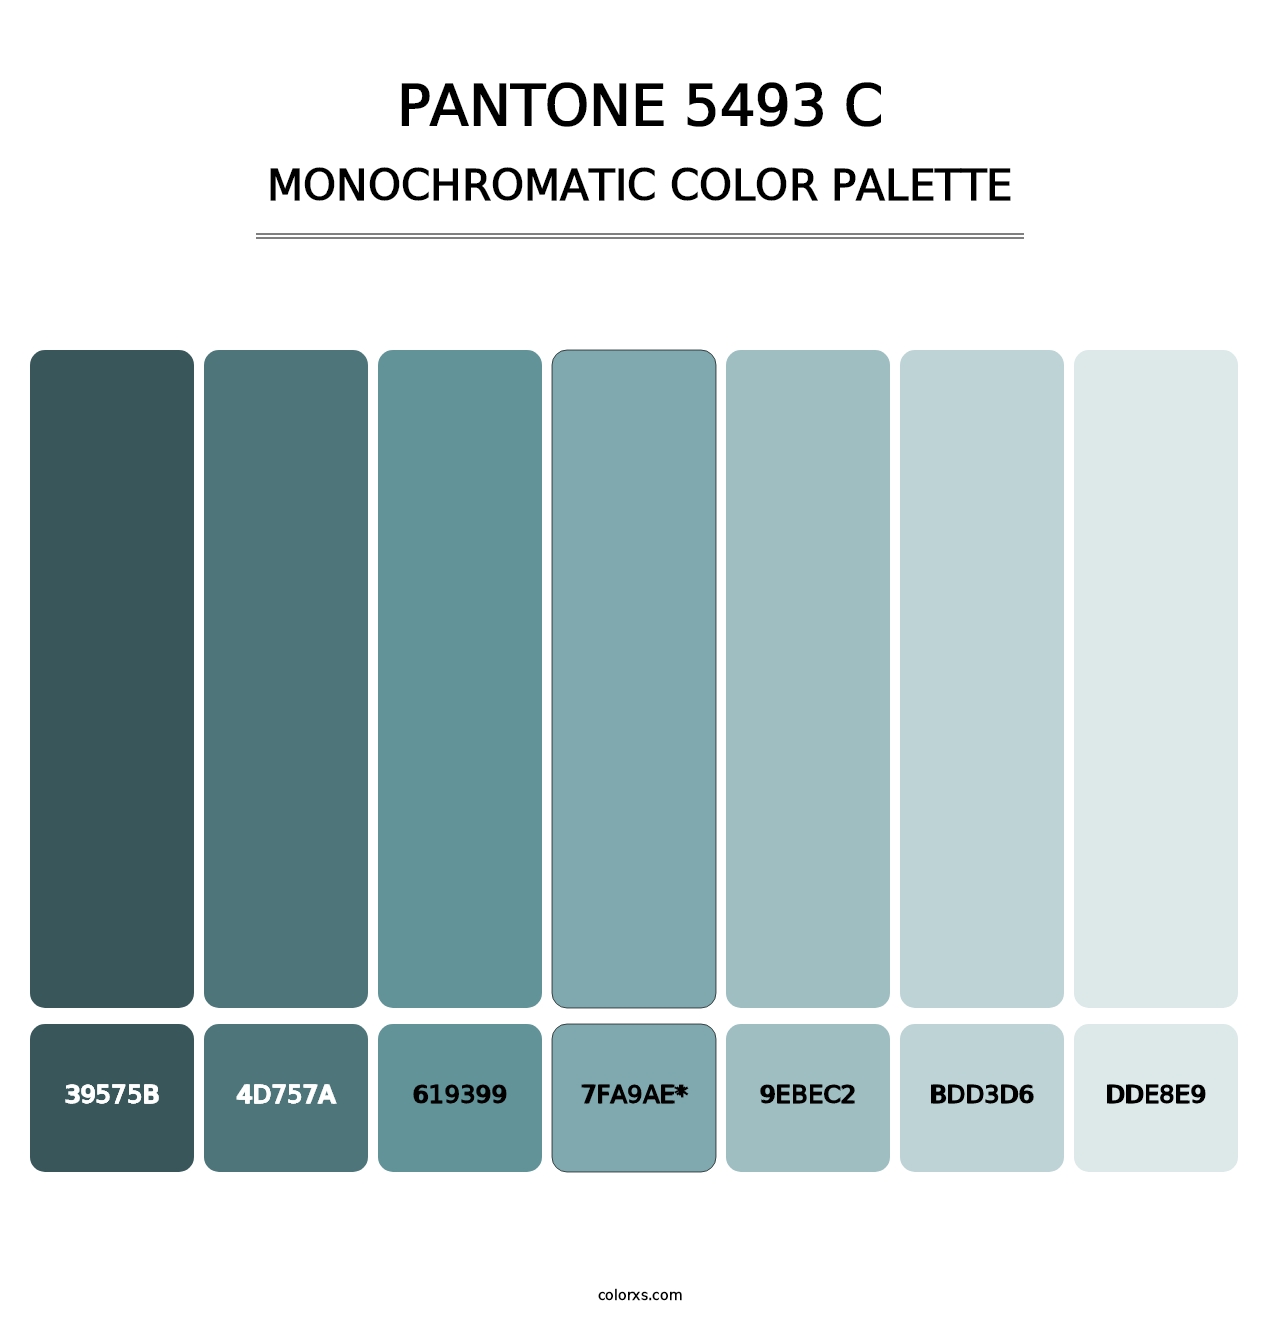 PANTONE 5493 C - Monochromatic Color Palette